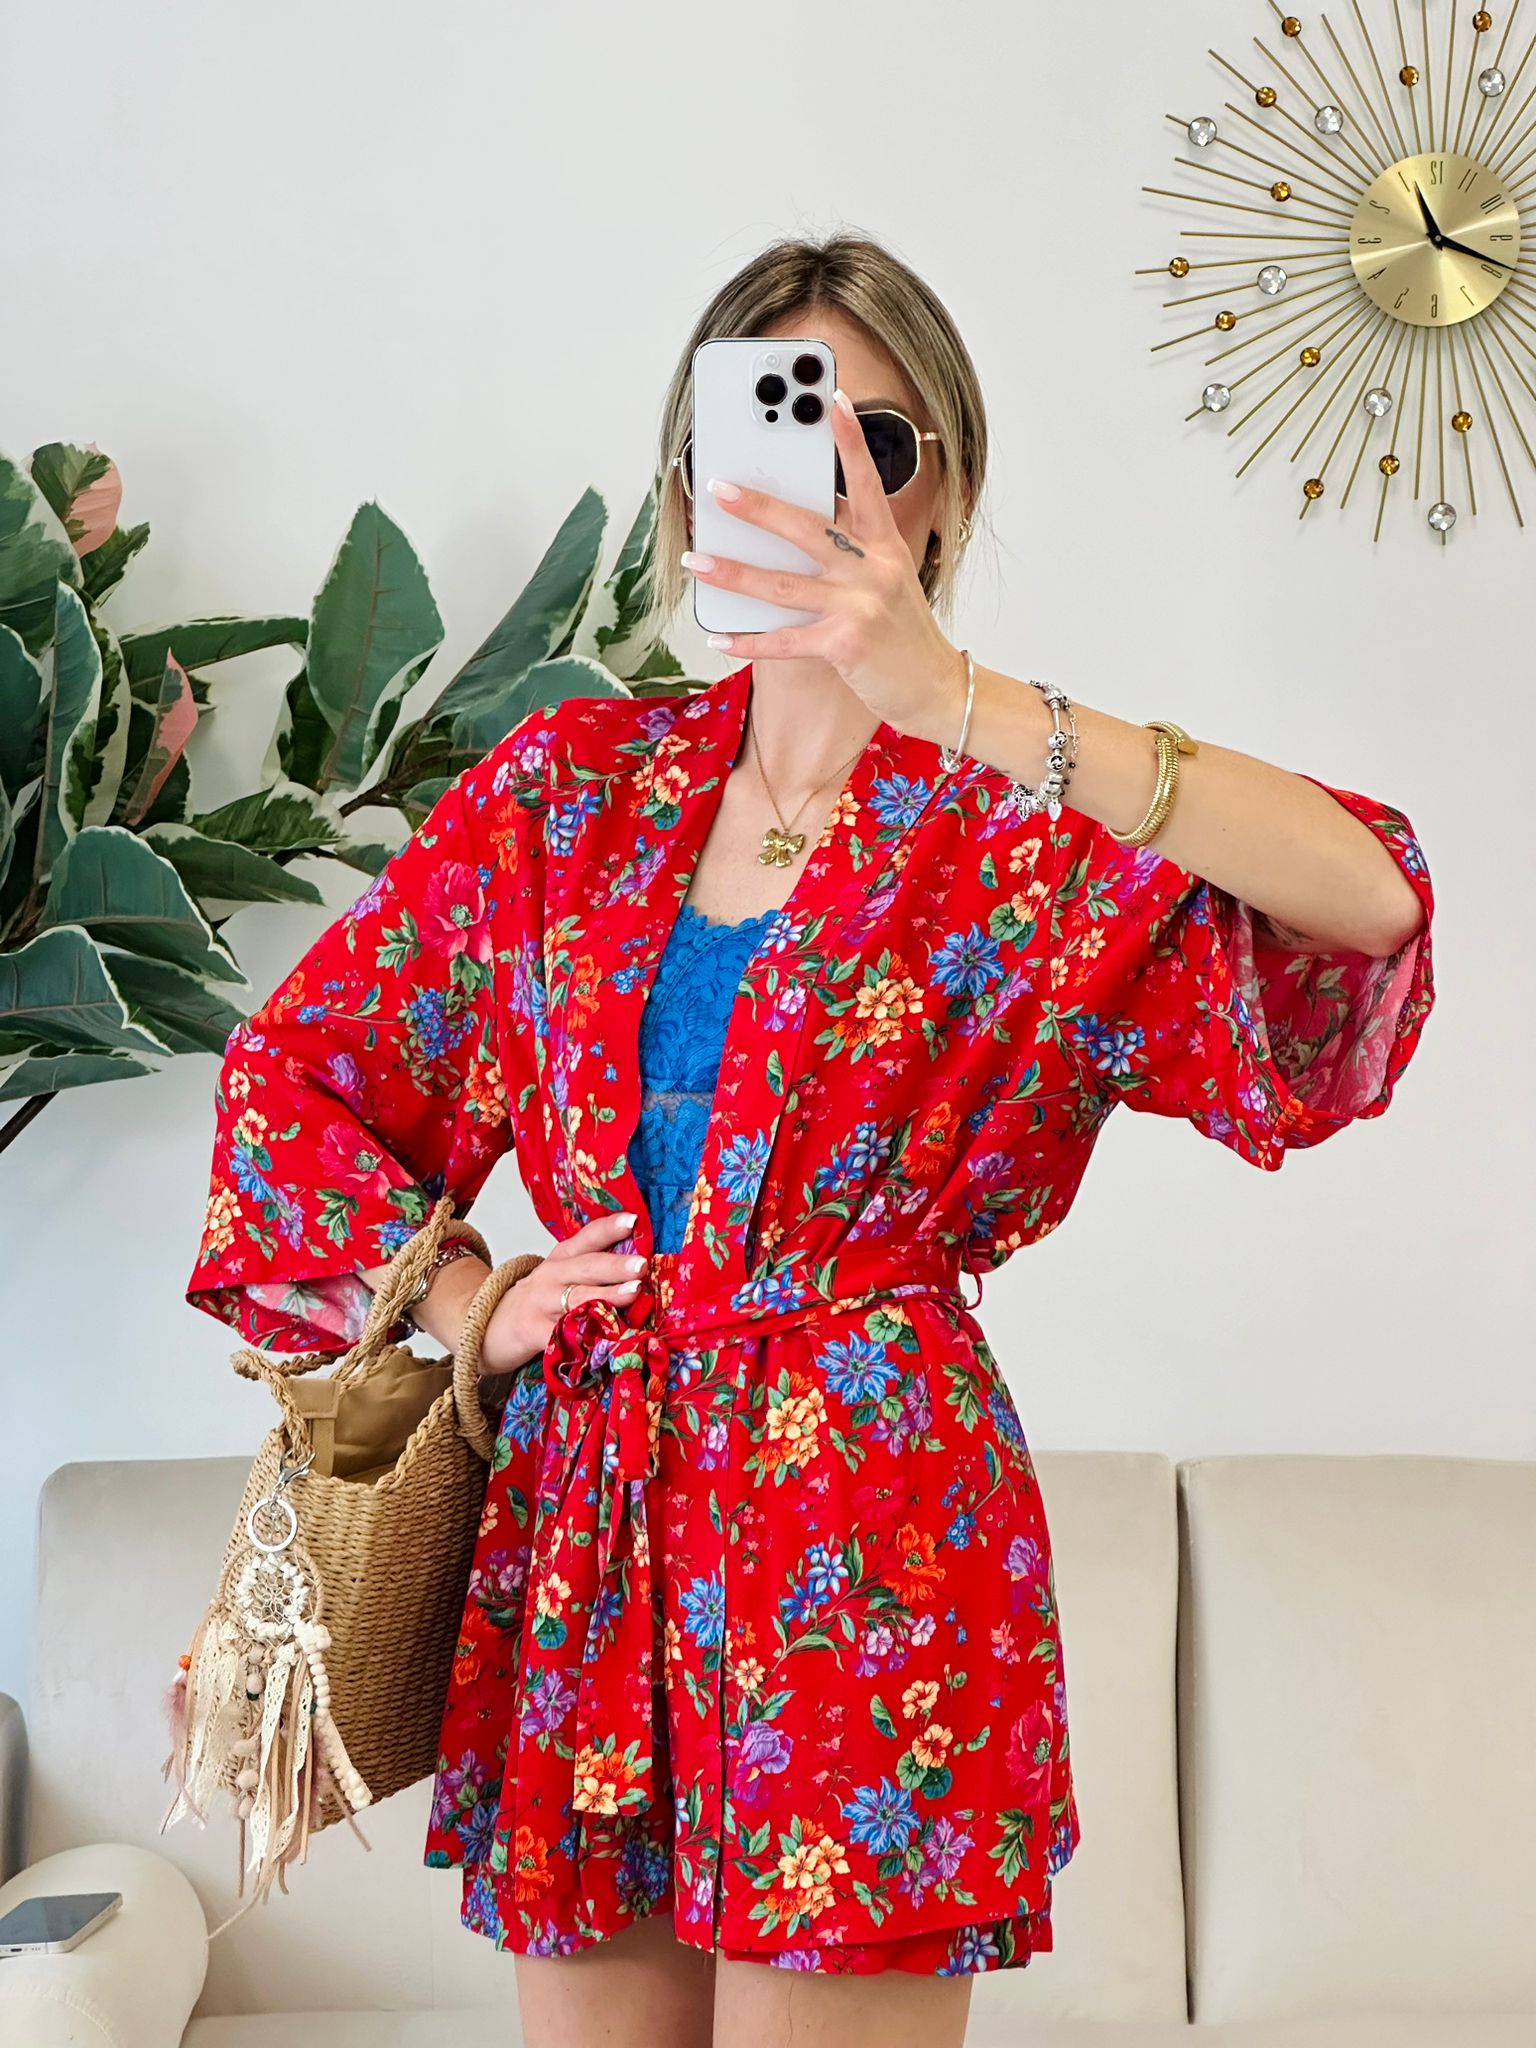 Noir coordonné (chemise kimono + short) fond rouge